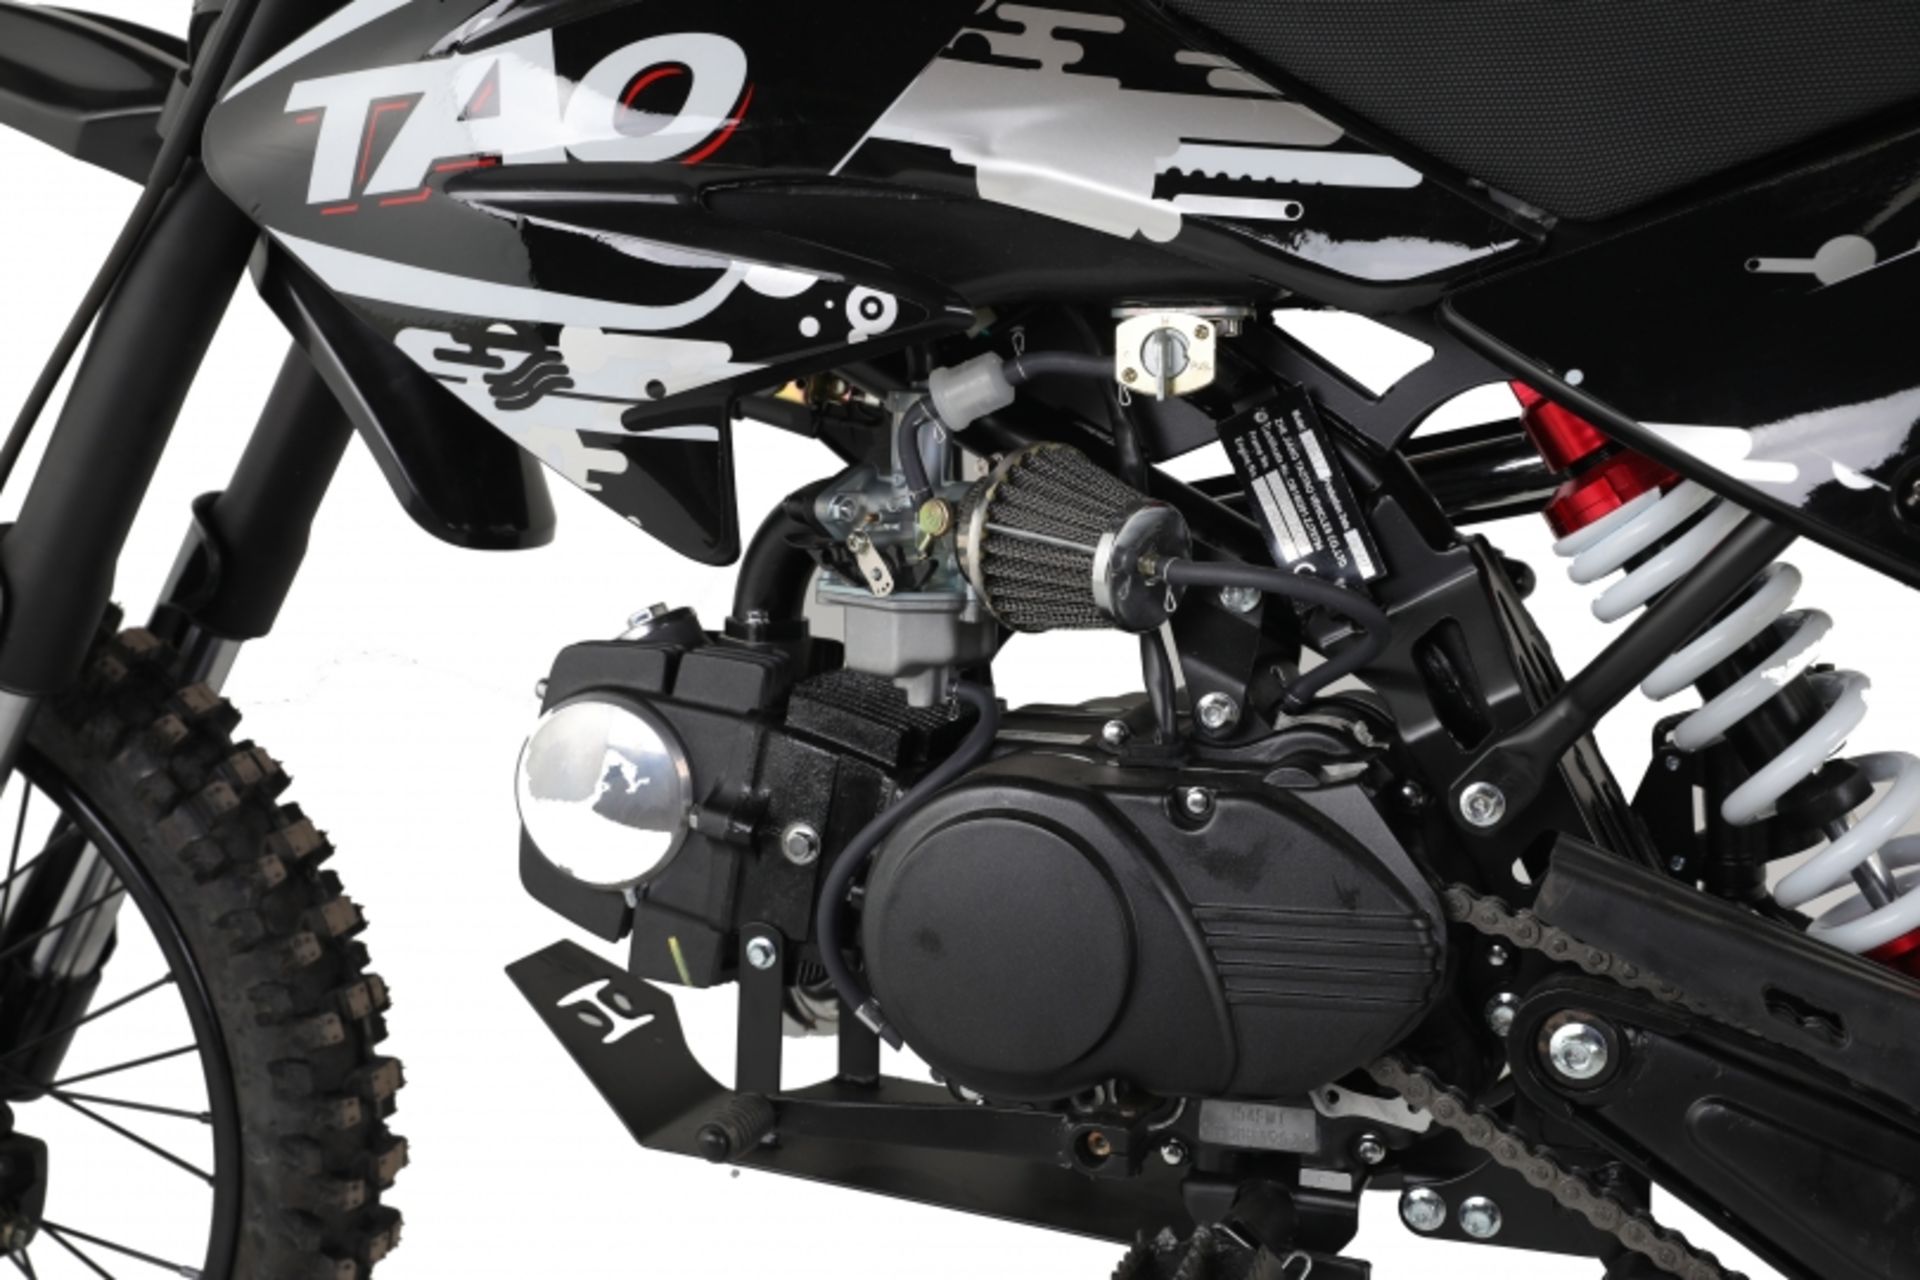 V Brand New 125cc USA Motocross Dirt Bike - Kick Start - Air Cooled - 4 Stroke - Full Suspension - - Image 5 of 5